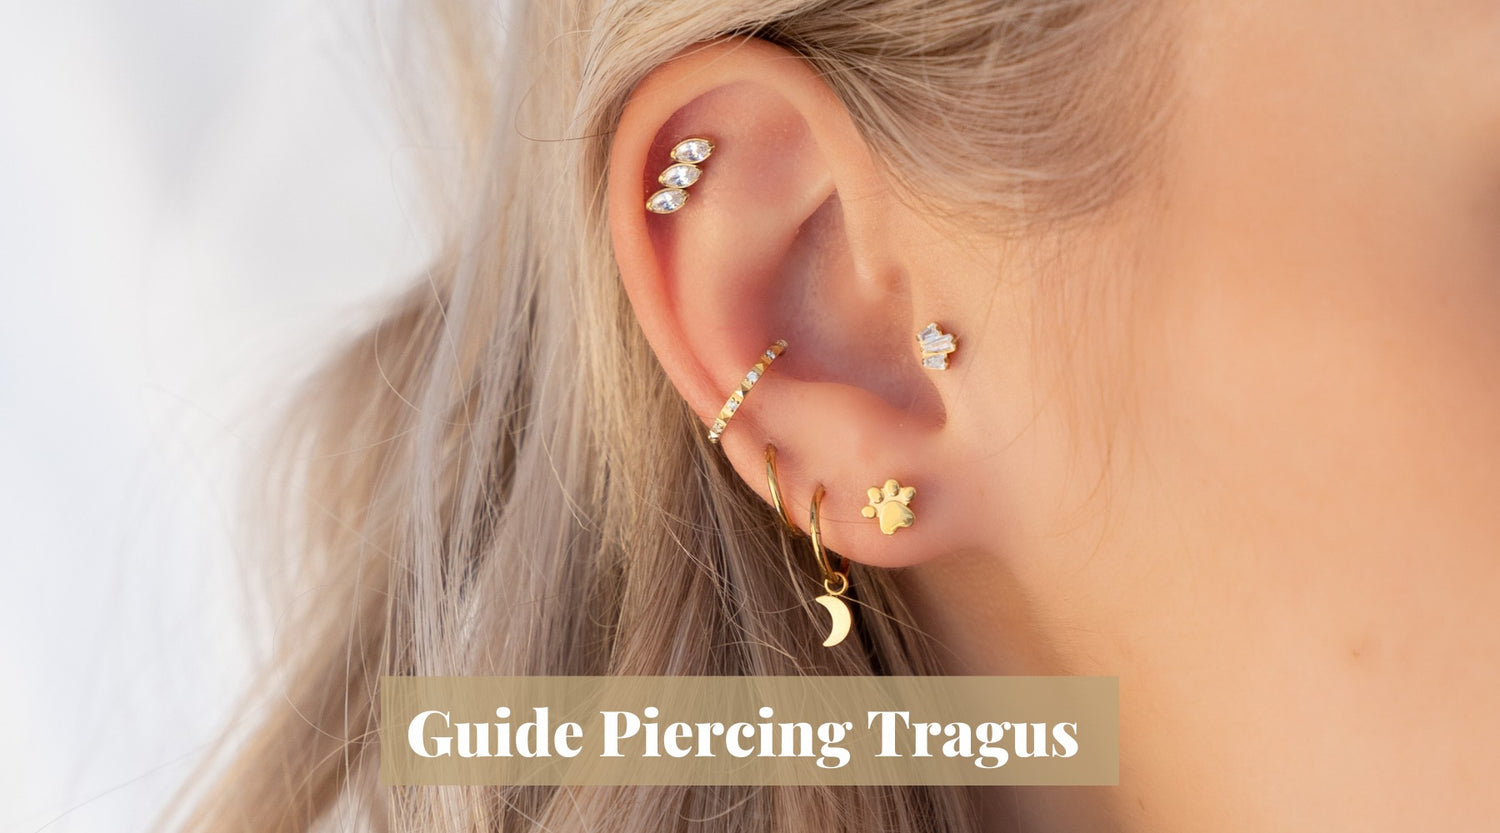 Piercing Tragus - Guide complet - Douleur, cicatrisation, quels bijoux choisir - Obsidian Piercing